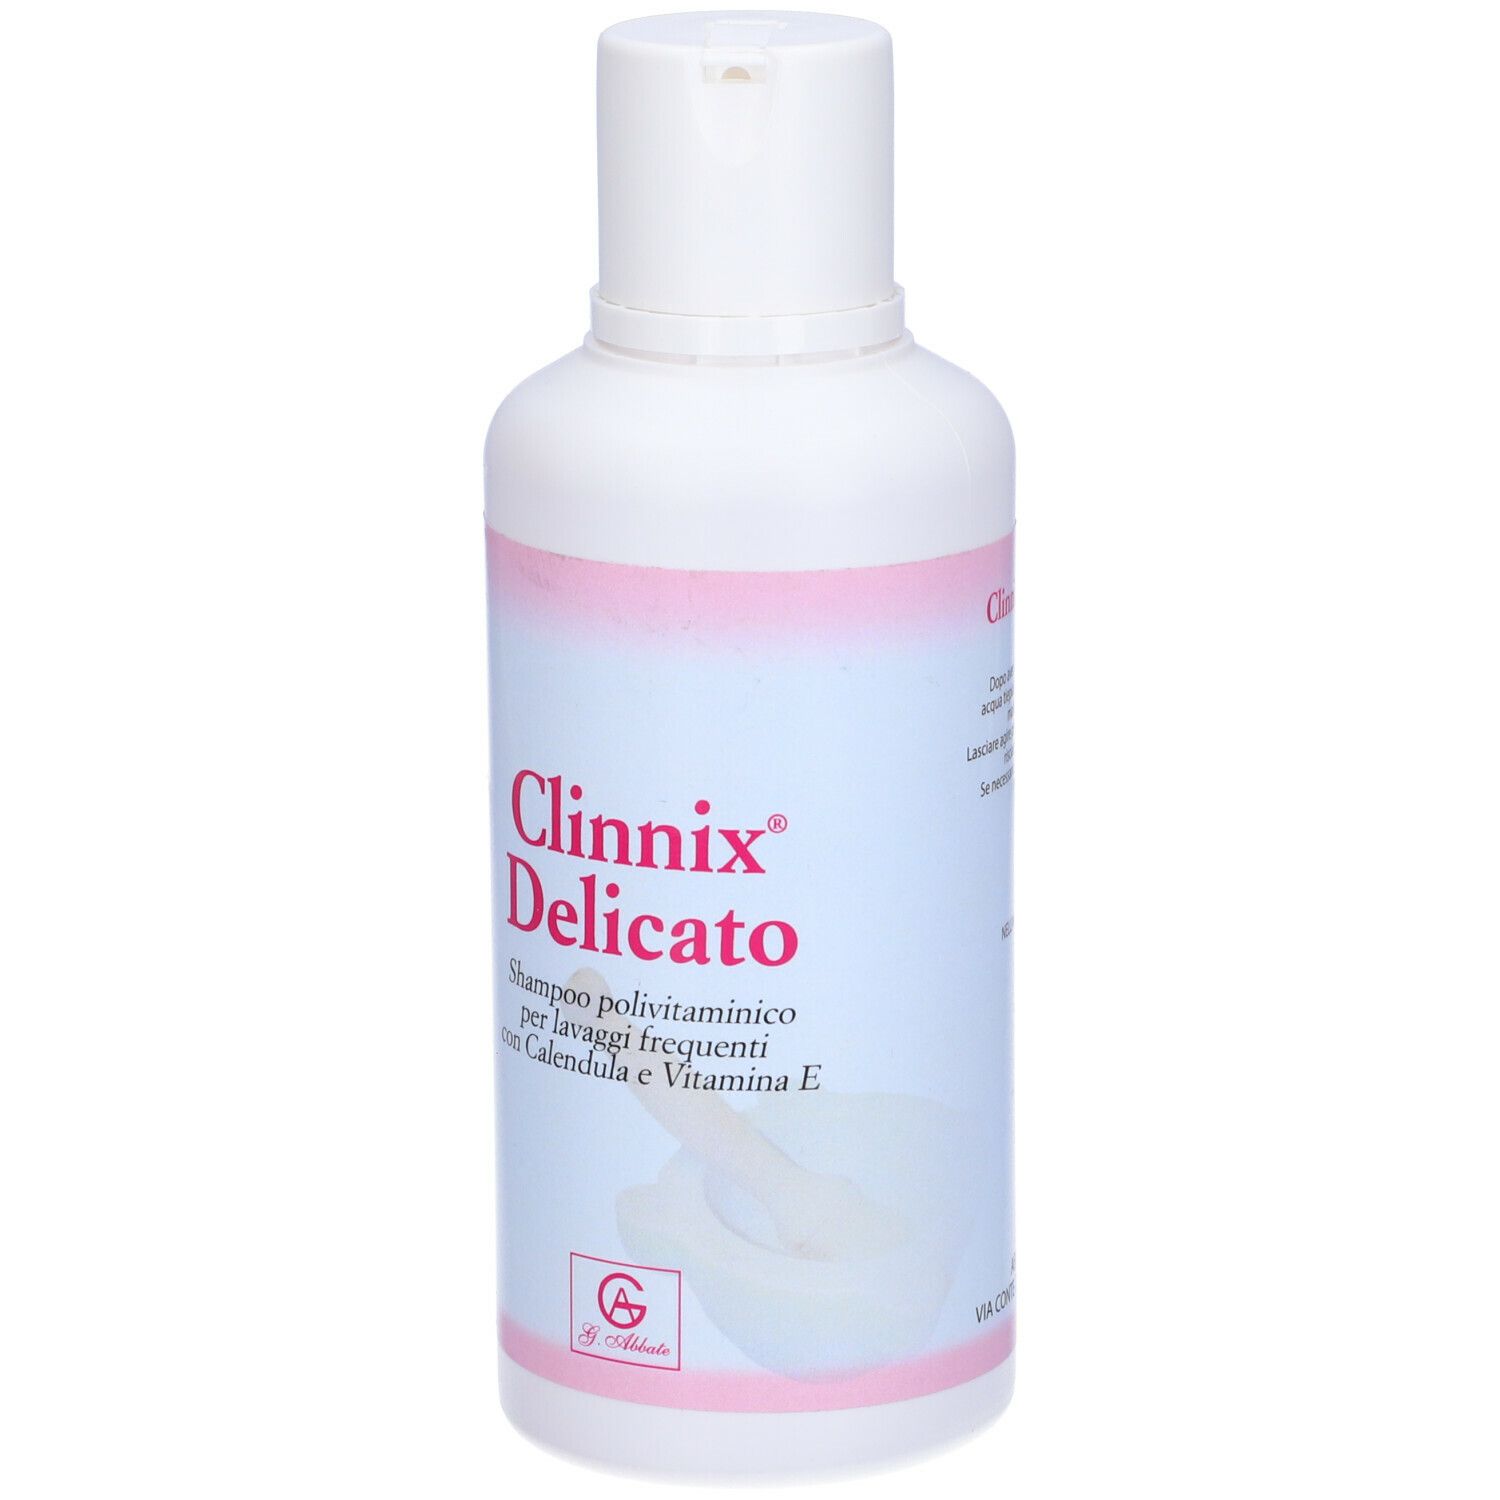 Clinnix Delicato Shampoo Lavaggi Frequenti